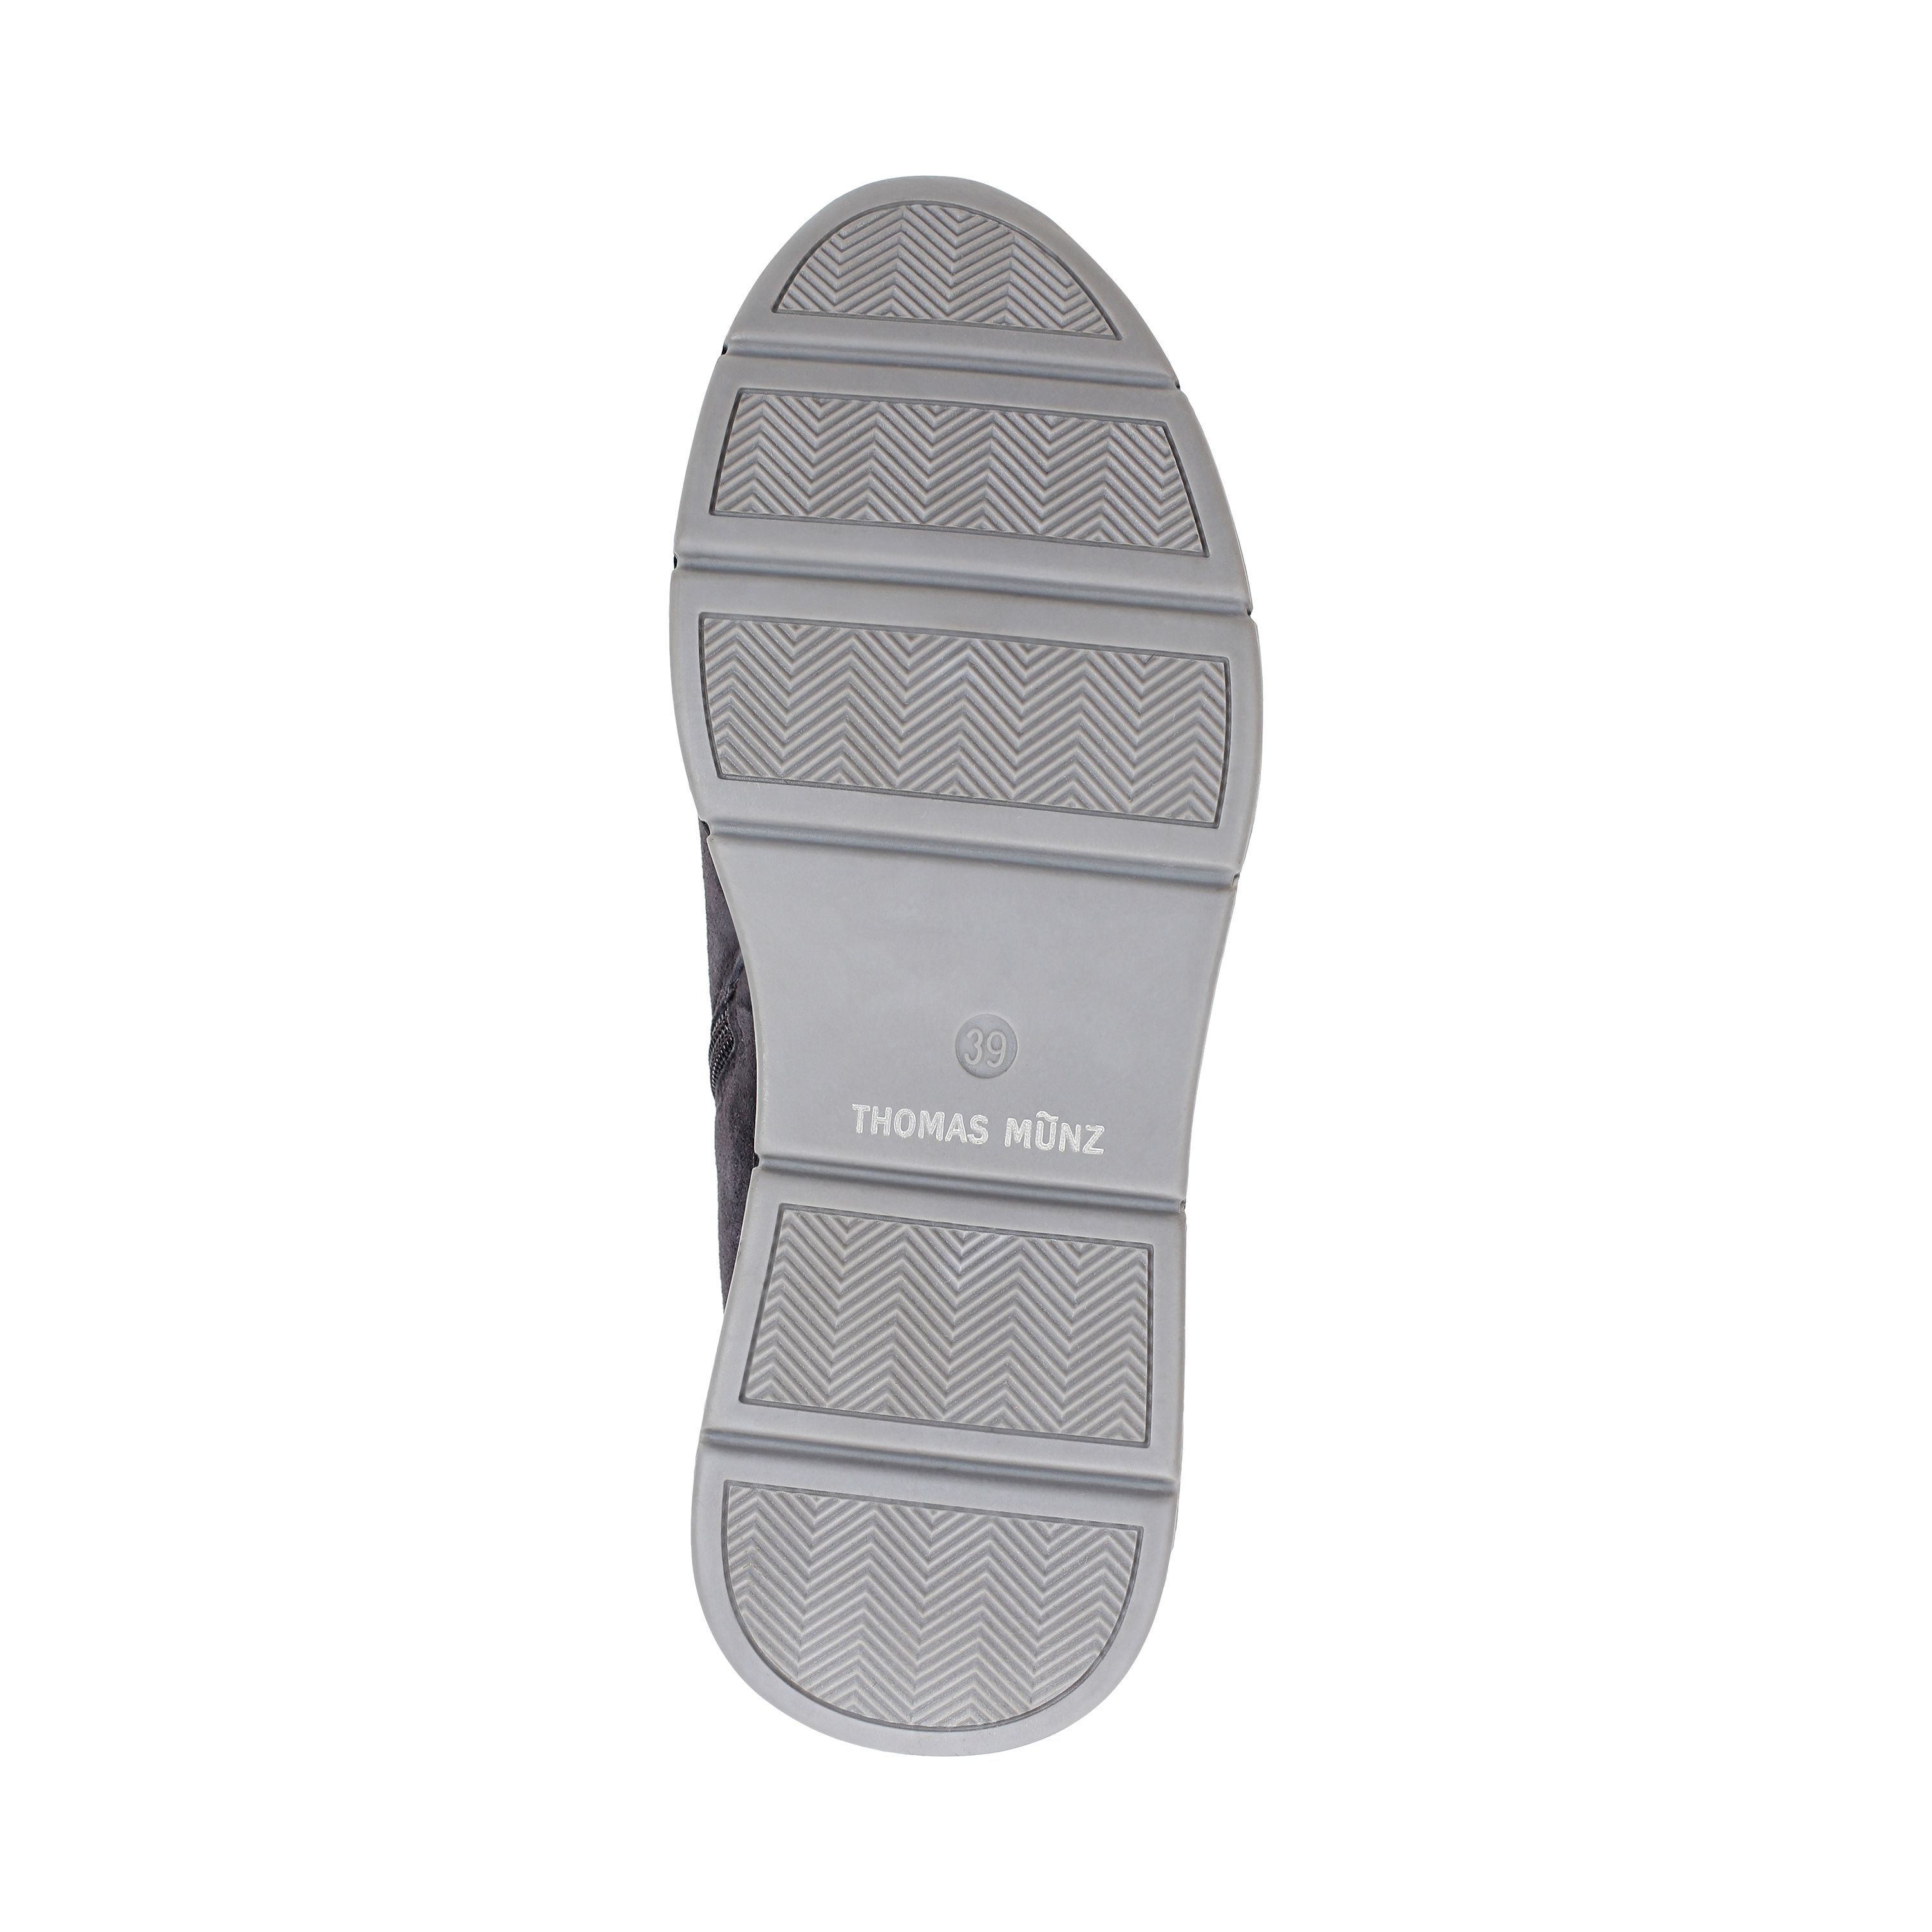 Ботинки Thomas Munz 021-184A-50610 021-184A-50610, цвет серый, размер 36 кроссовки высокие - фото 4